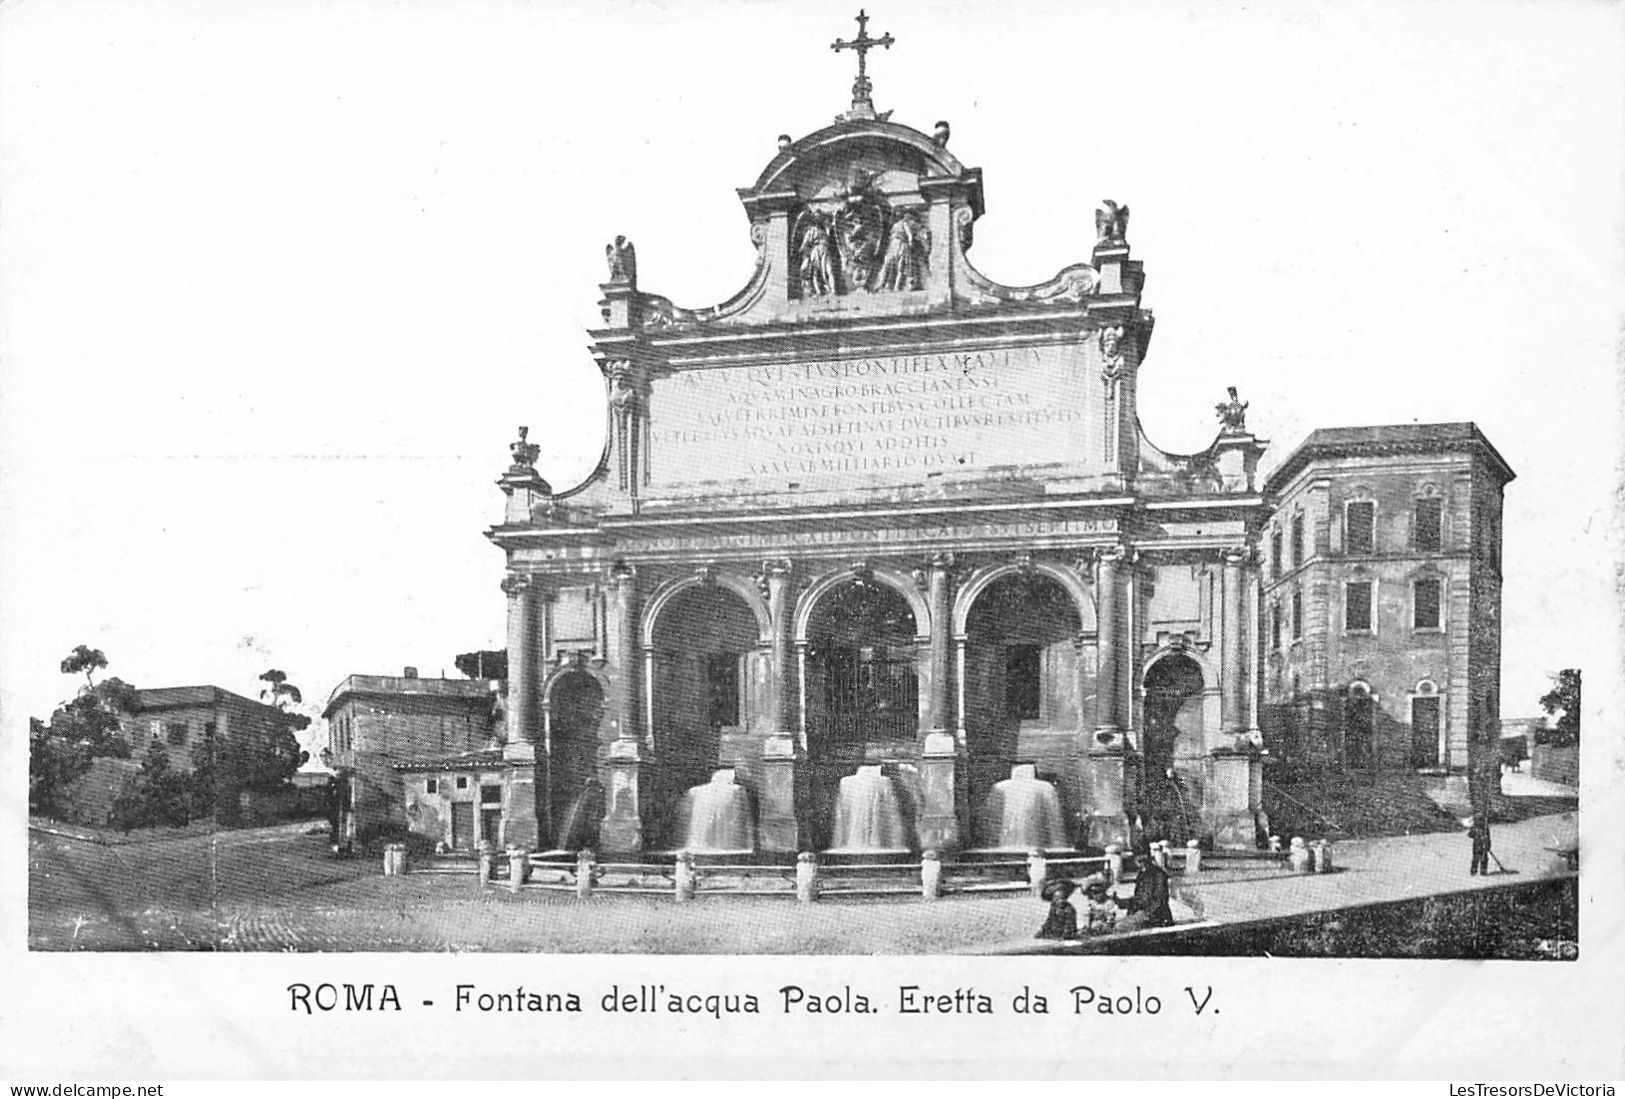 ITALIE - Roma - Fontana Dell'acqua Paola. Eretta Da Paolo V - Carte Postale Ancienne - Andere Monumente & Gebäude